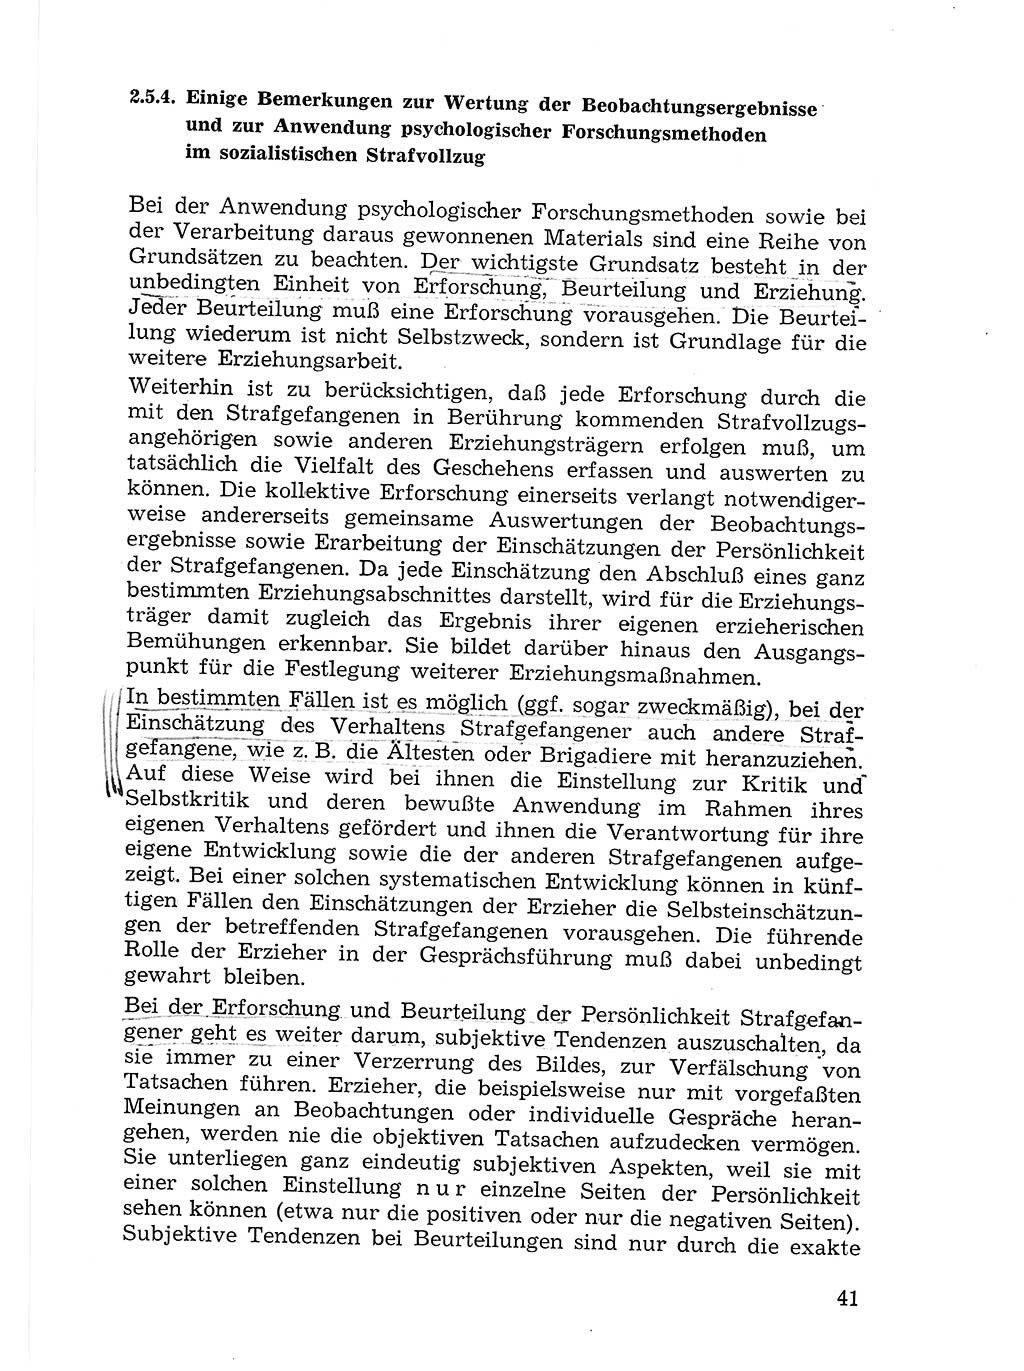 Sozialistischer Strafvollzug (SV) [Deutsche Demokratische Republik (DDR)] 1972, Seite 41 (Soz. SV DDR 1972, S. 41)